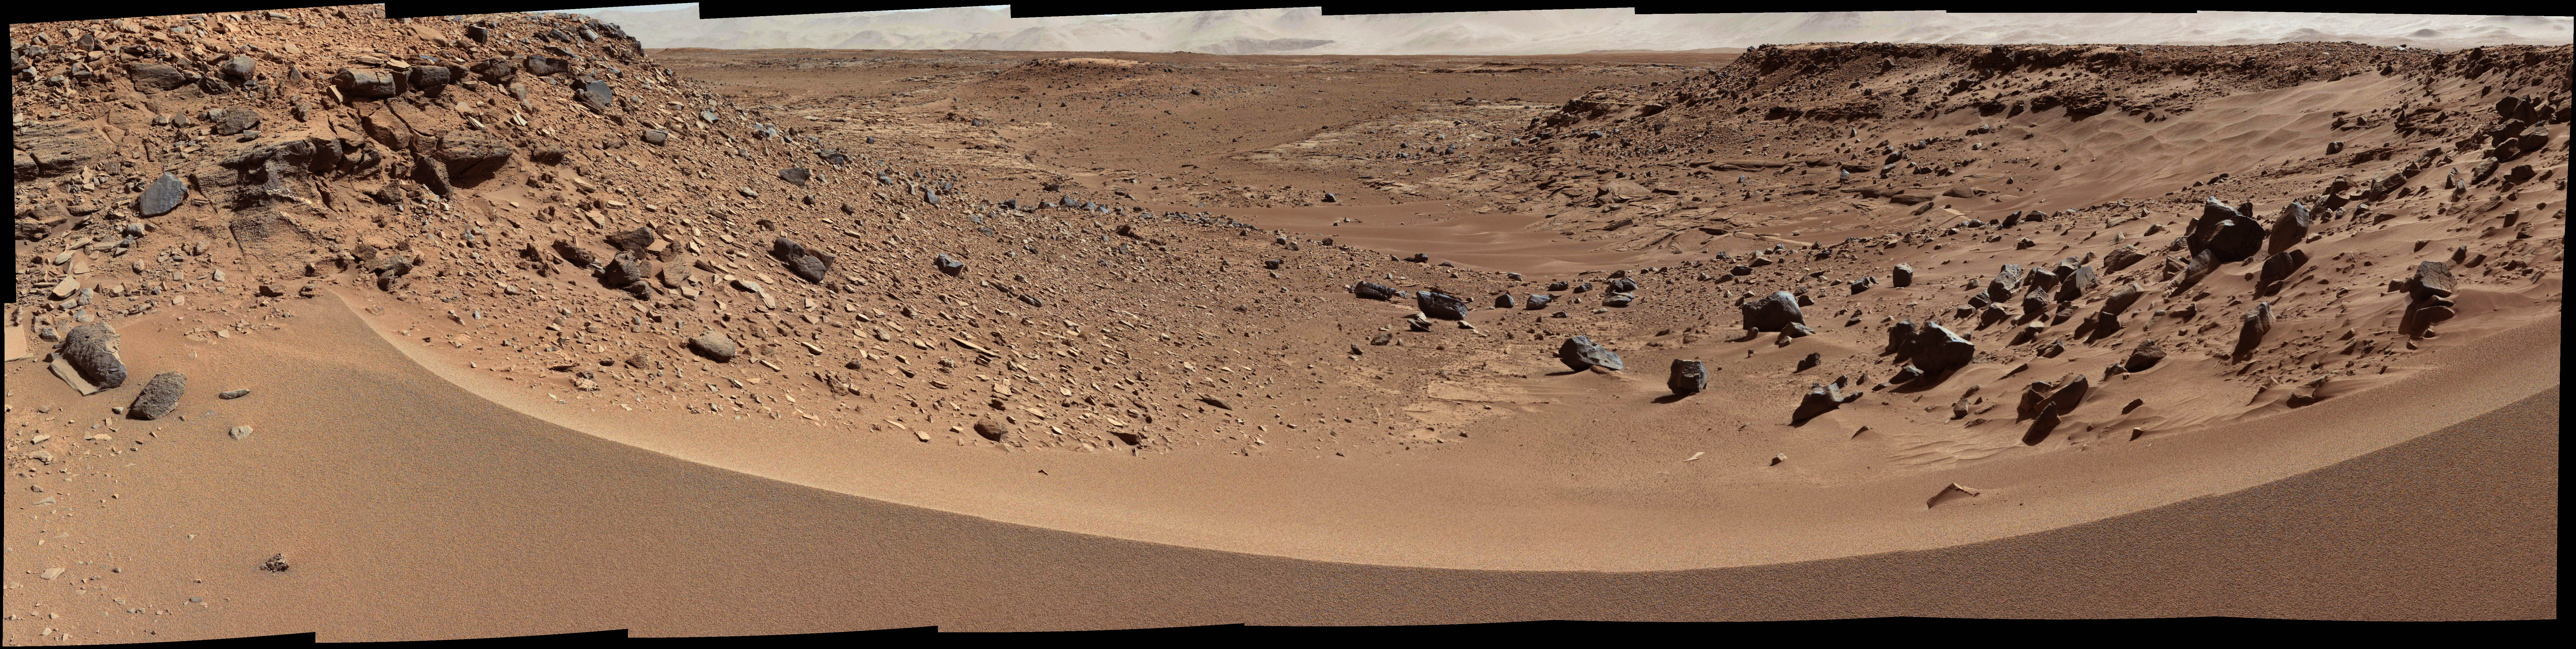 Panorama de Mars réalisé par Curiosity en janvier 2014 ()